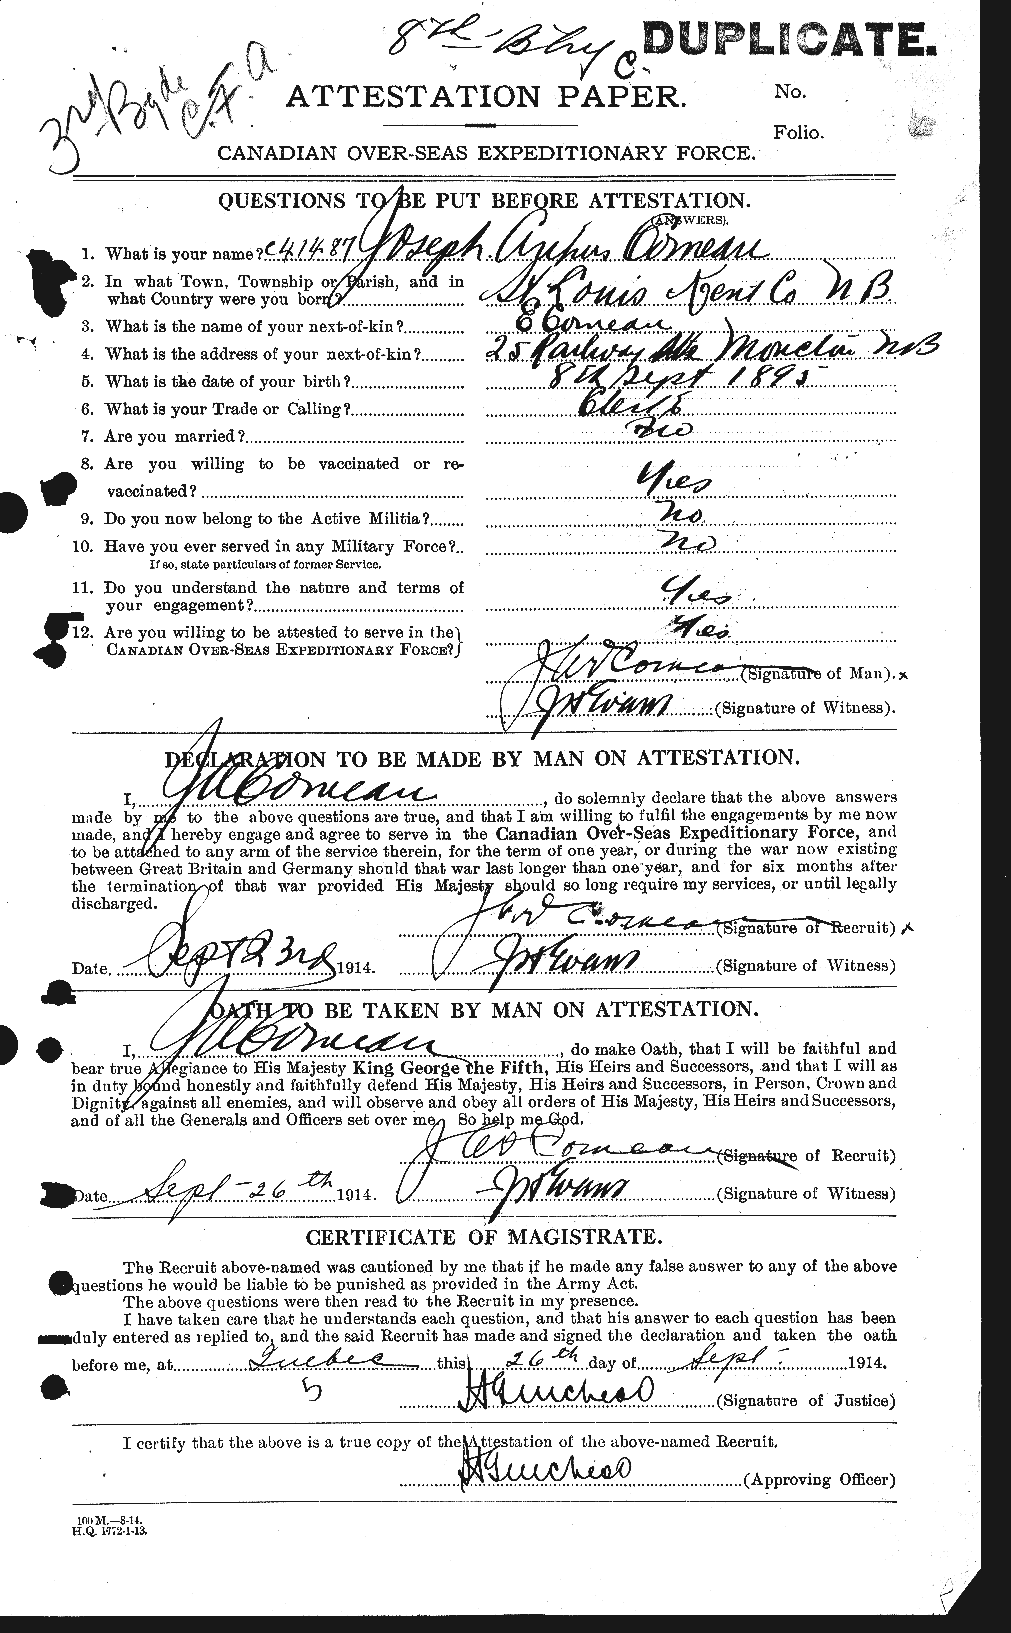 Dossiers du Personnel de la Première Guerre mondiale - CEC 069600a